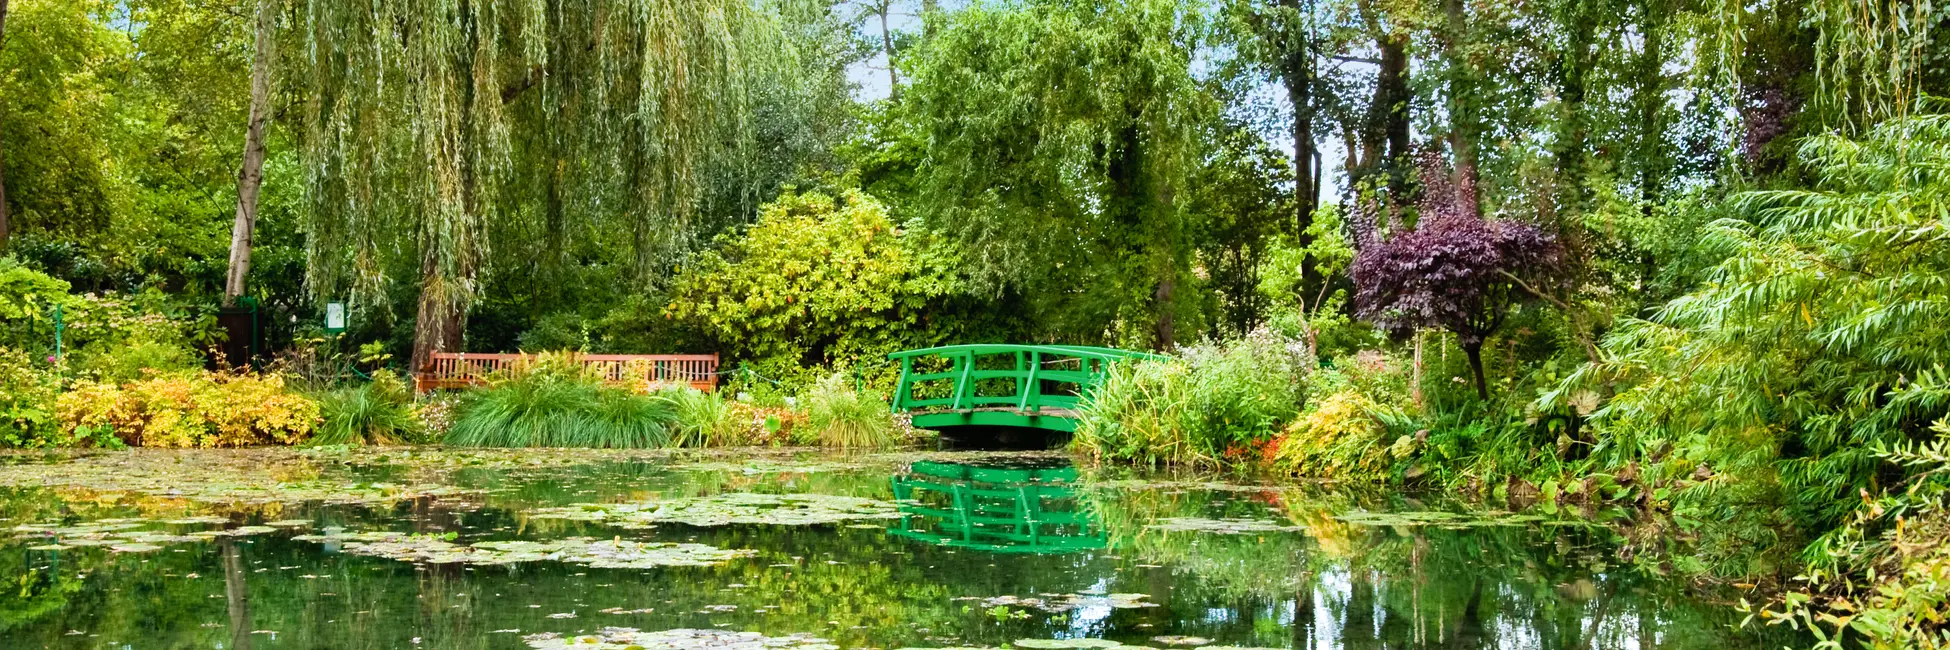 Mare dans le jardin de Monet à Giverny 